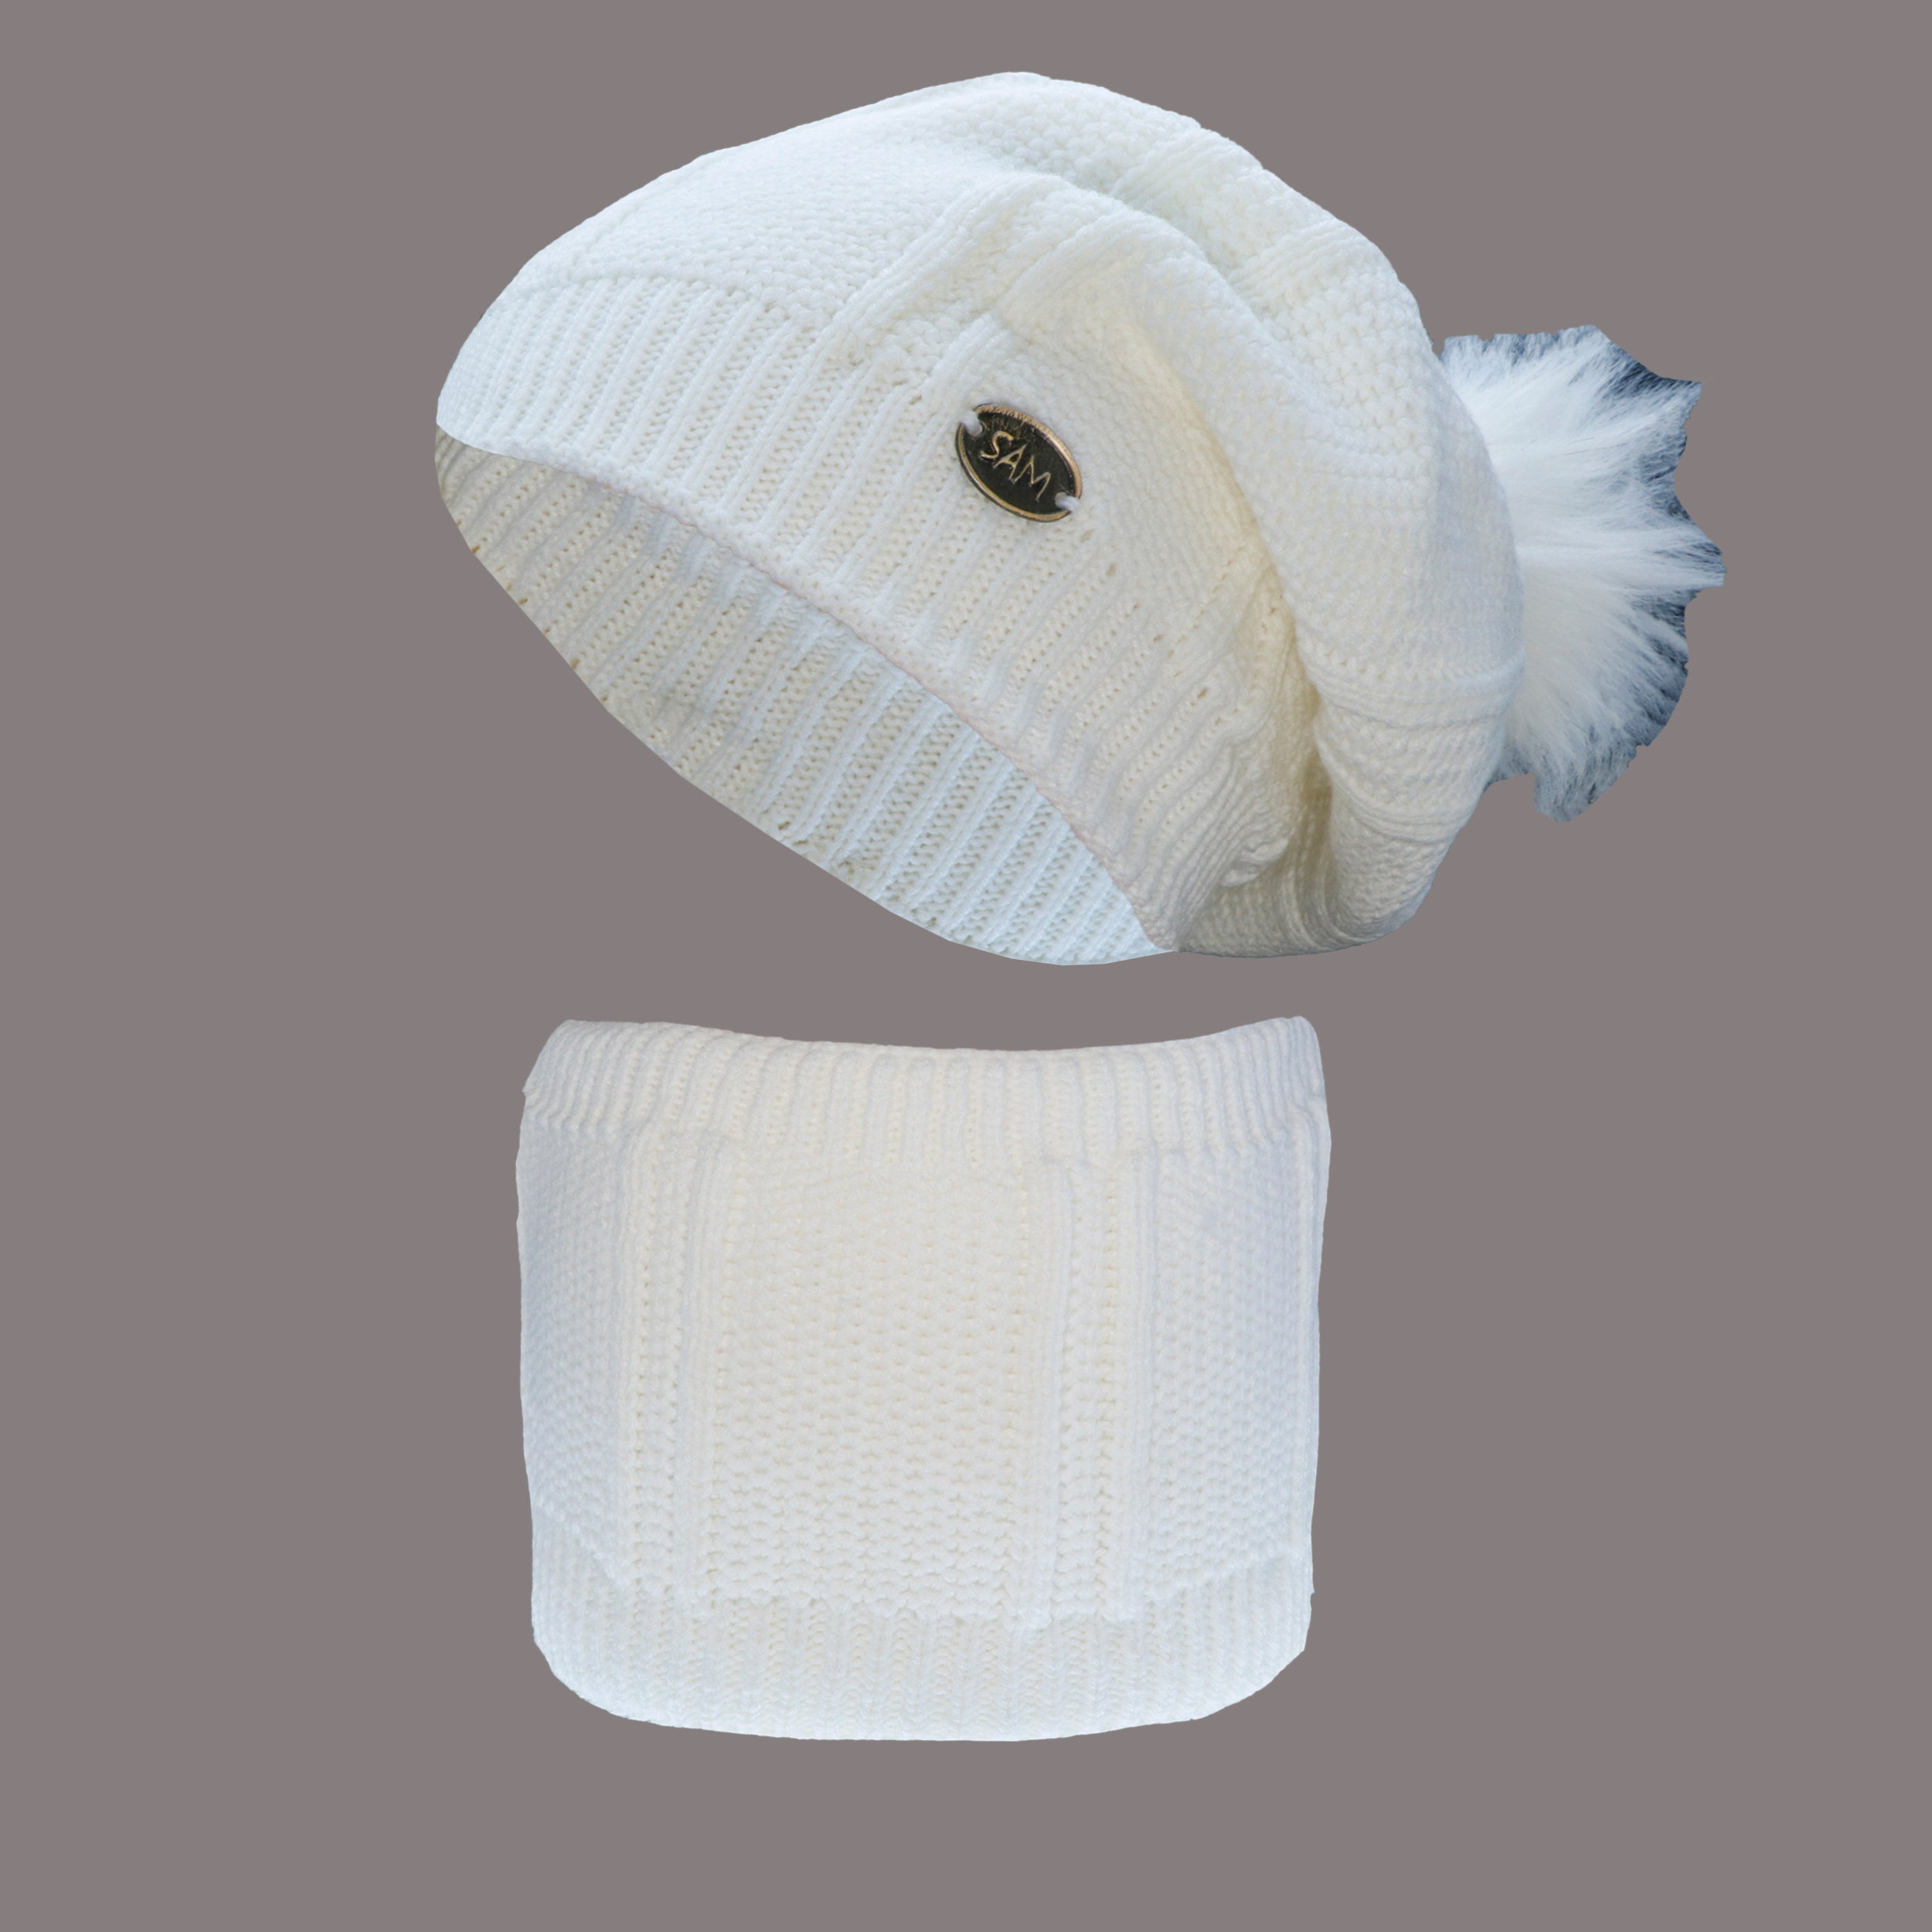 ست کلاه و شال گردن بافتنی بچگانه سام مدل 212 رنگ سفید